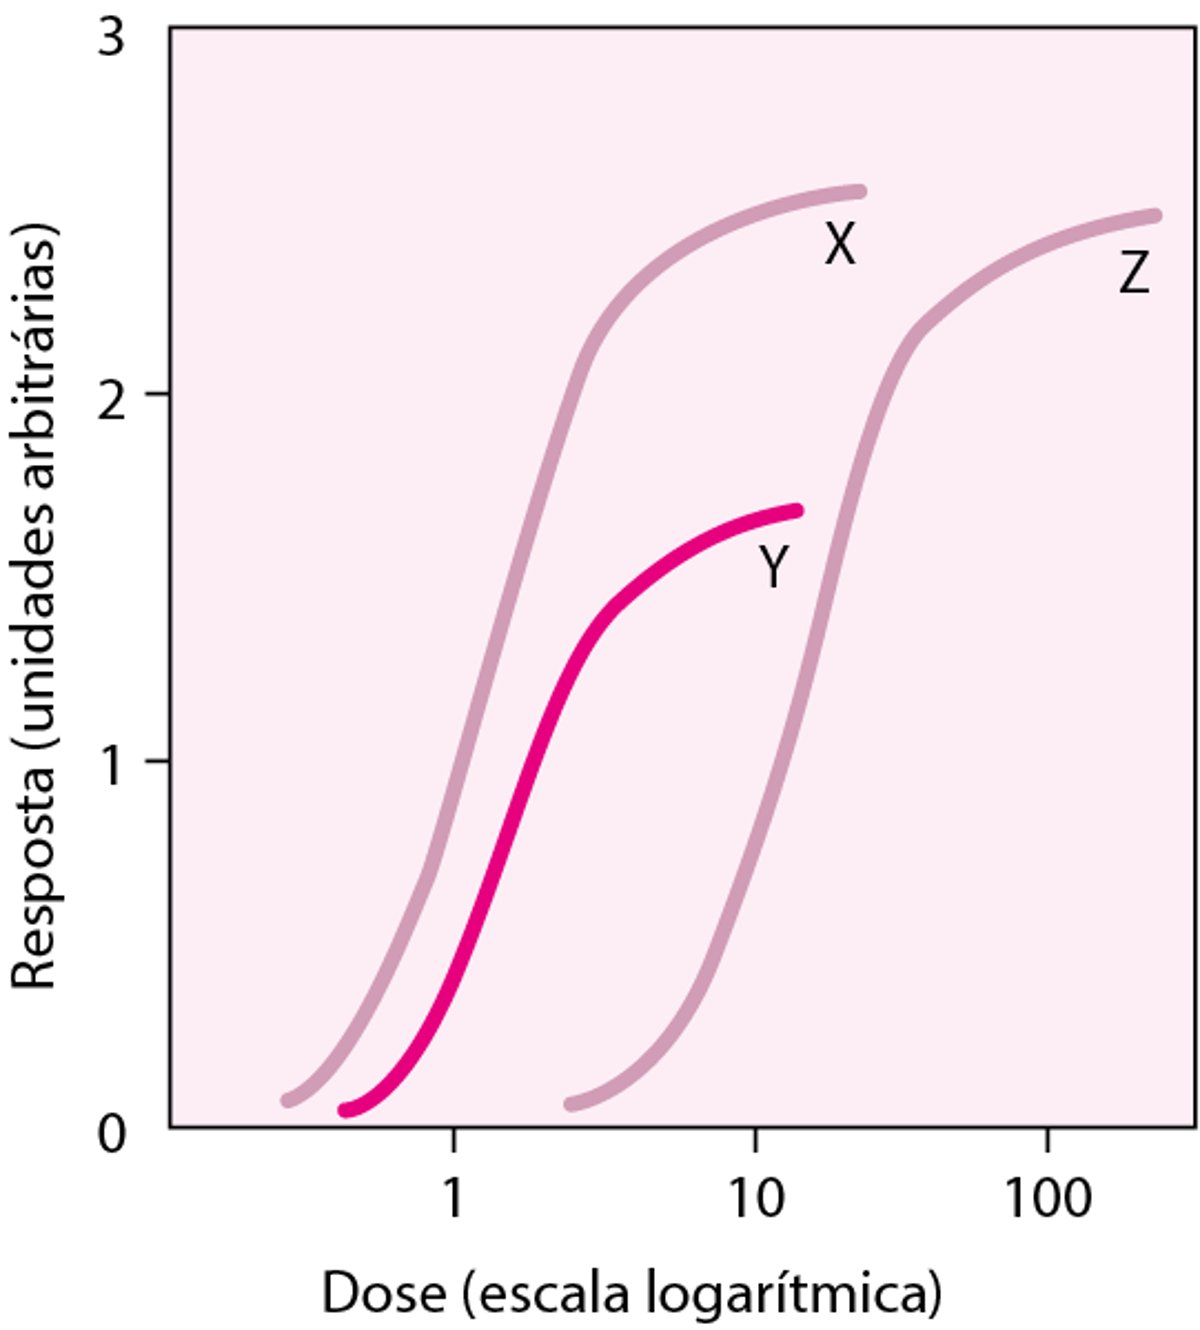 Comparação das curvas dose-resposta para os fármacos X, Y e Z